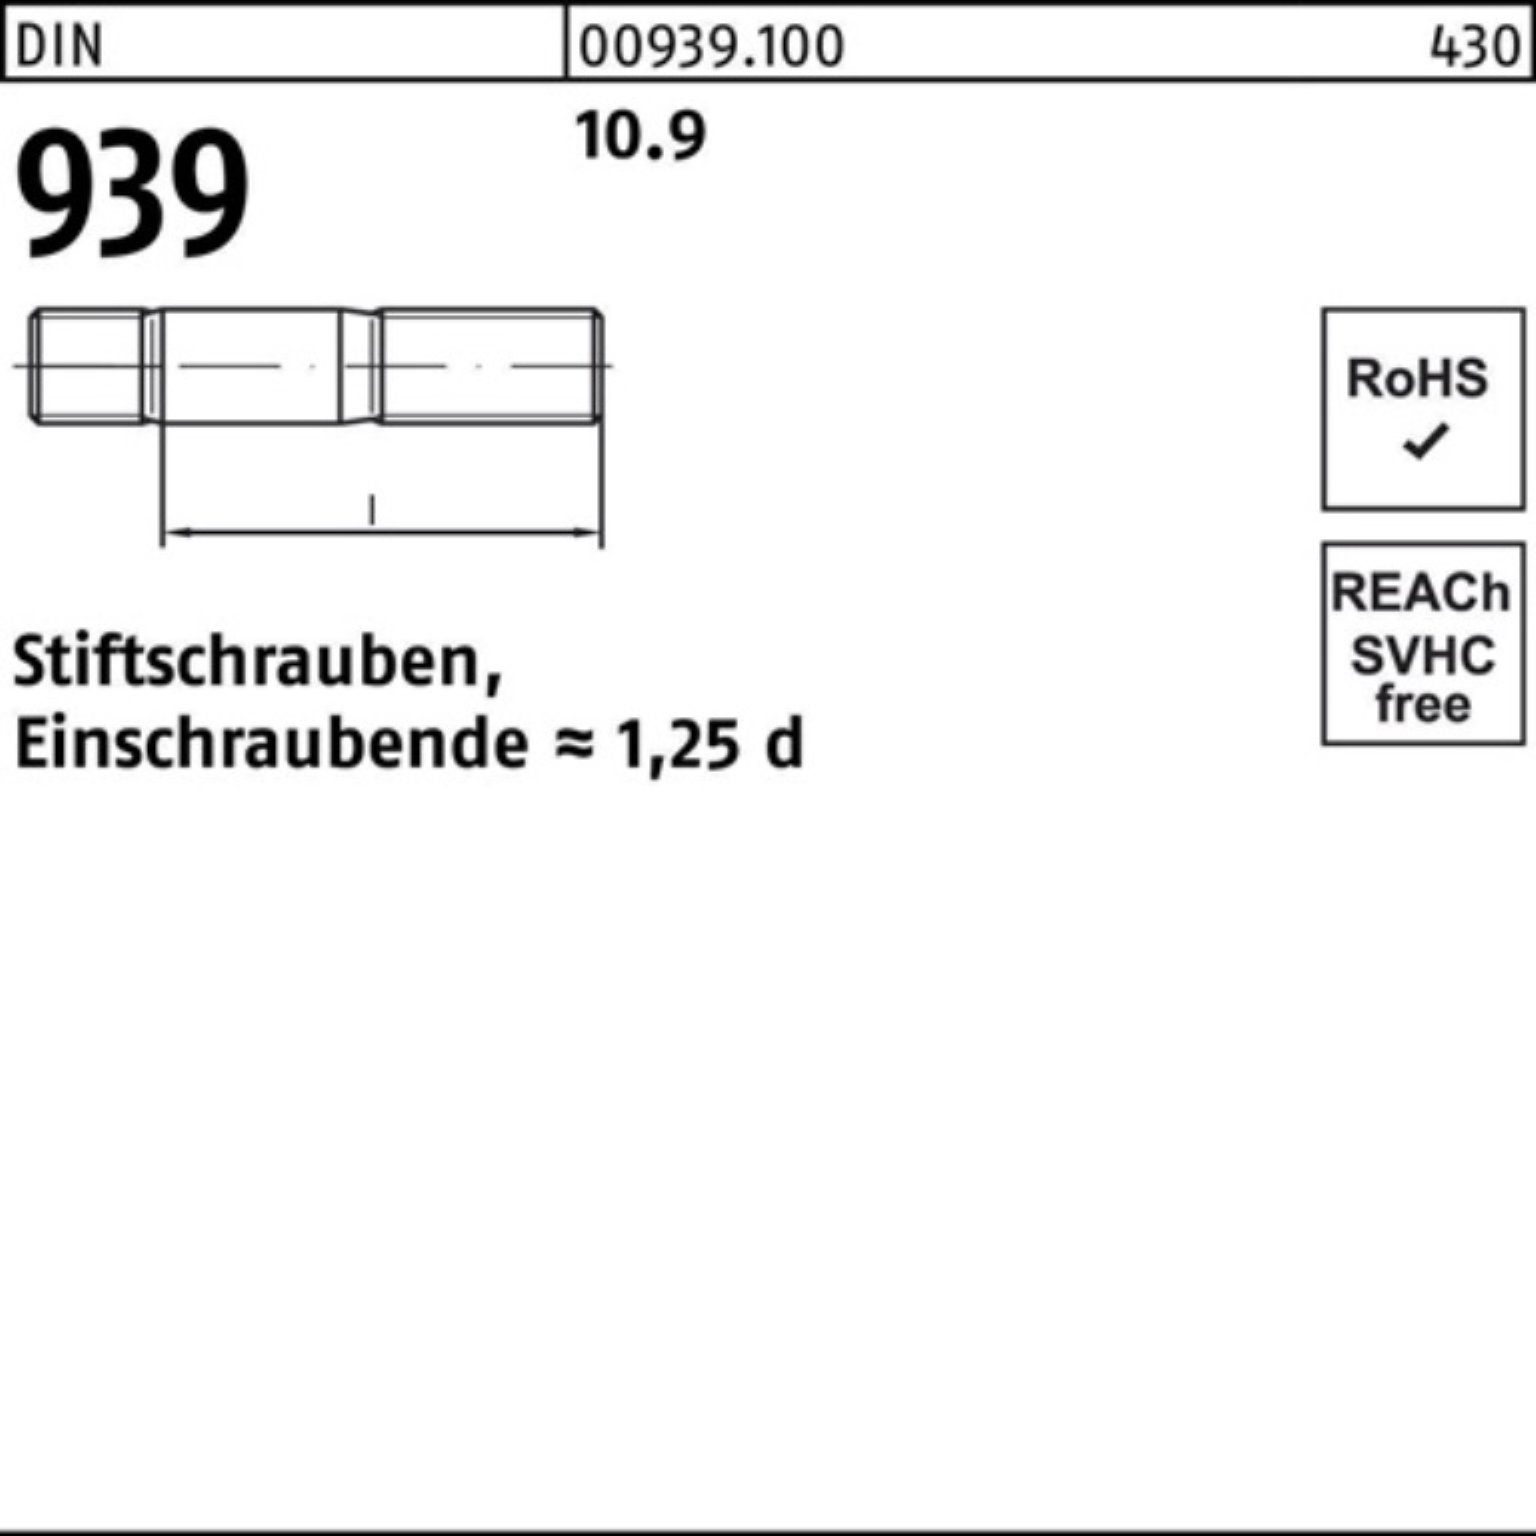 Reyher Stiftschraube 100er Pack Stiftschraube 939 140 10 M16x DIN Einschraubende=1,25d 10.9